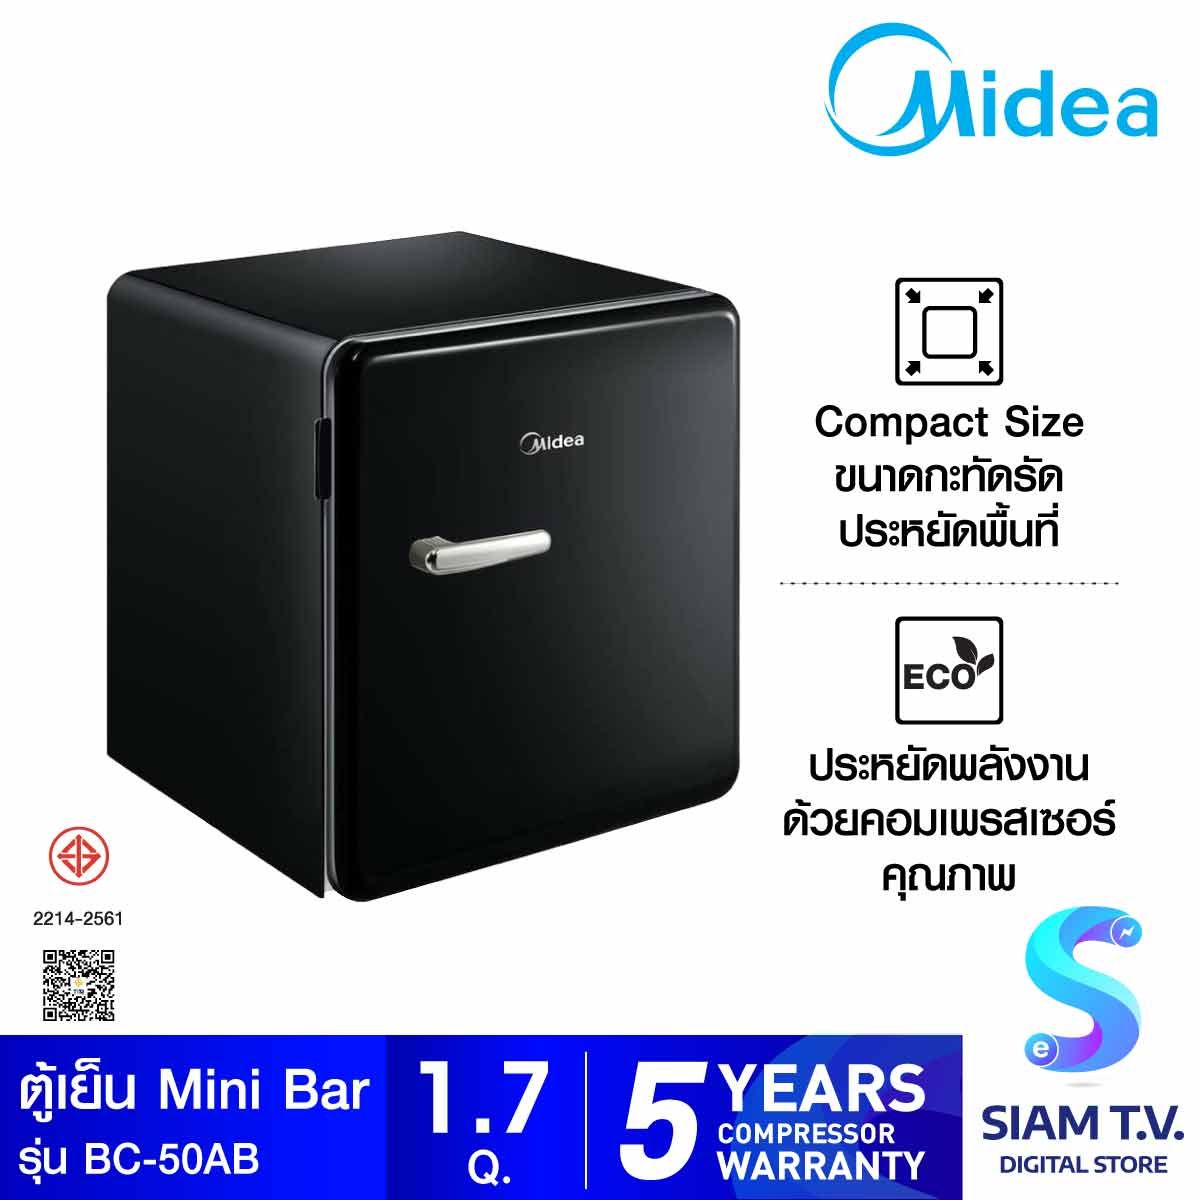 MIDEA ตู้เย็นมินิบาร์ 1.7Q Retro สีดำ รุ่นBC-50AB